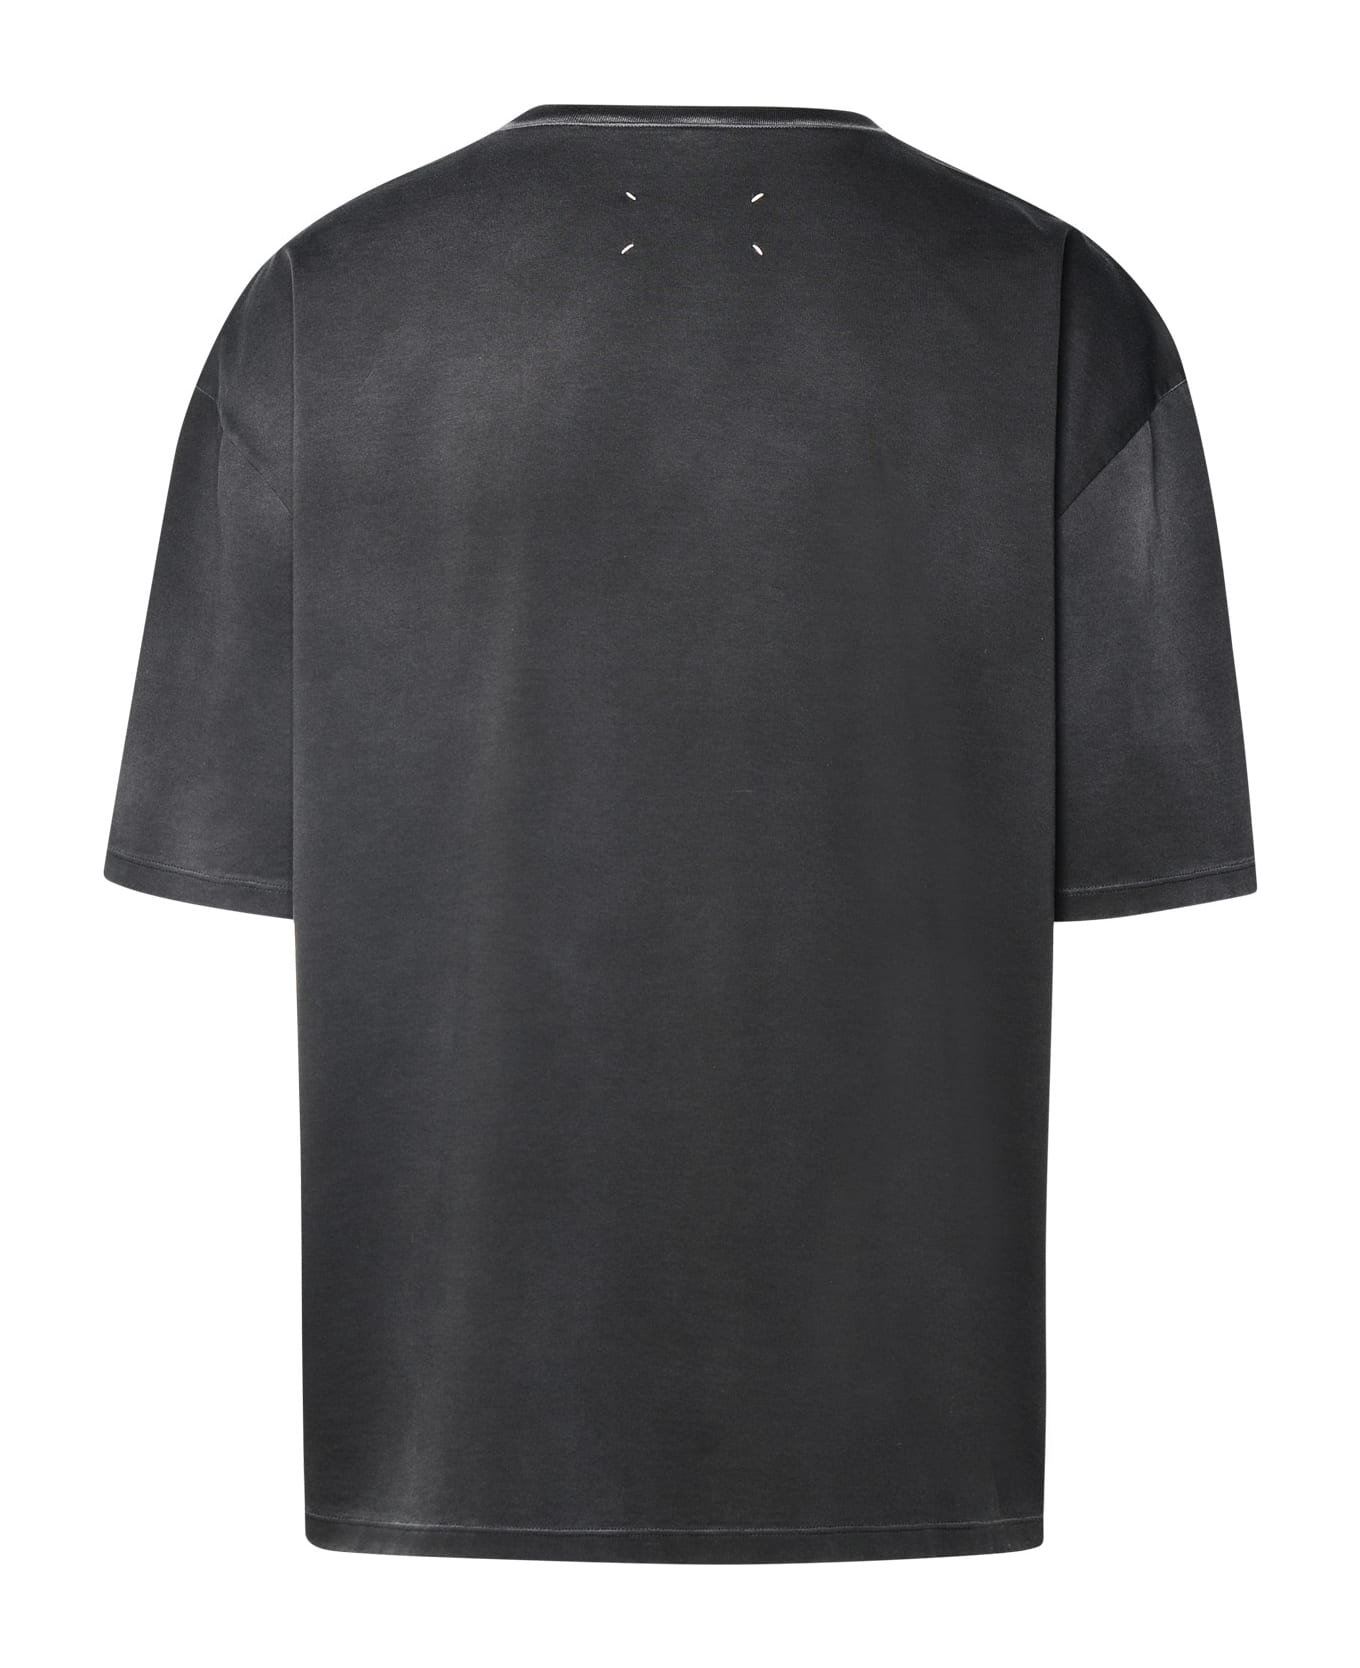 Maison Margiela Black Cotton T-shirt - Black